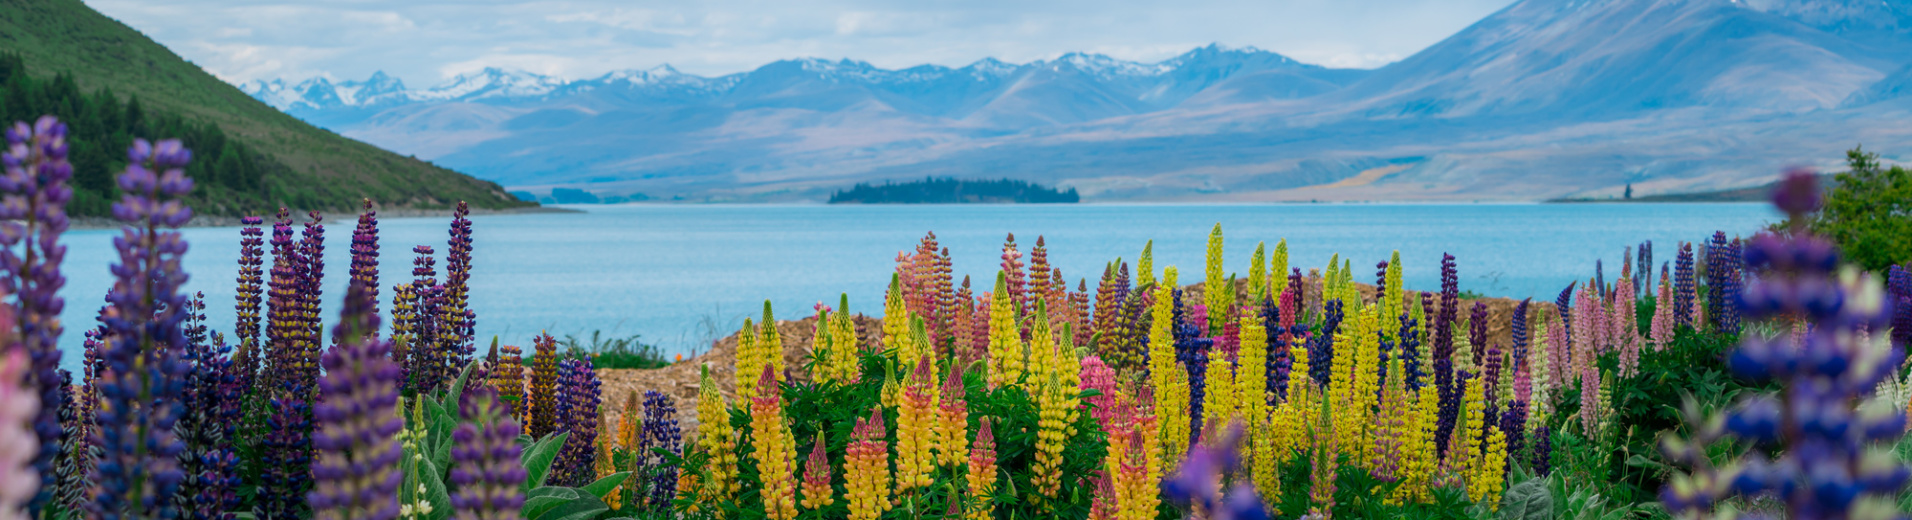 Fleurs colorées devant le Lac Tekapo et les montagnes en Nouvelle Zélande